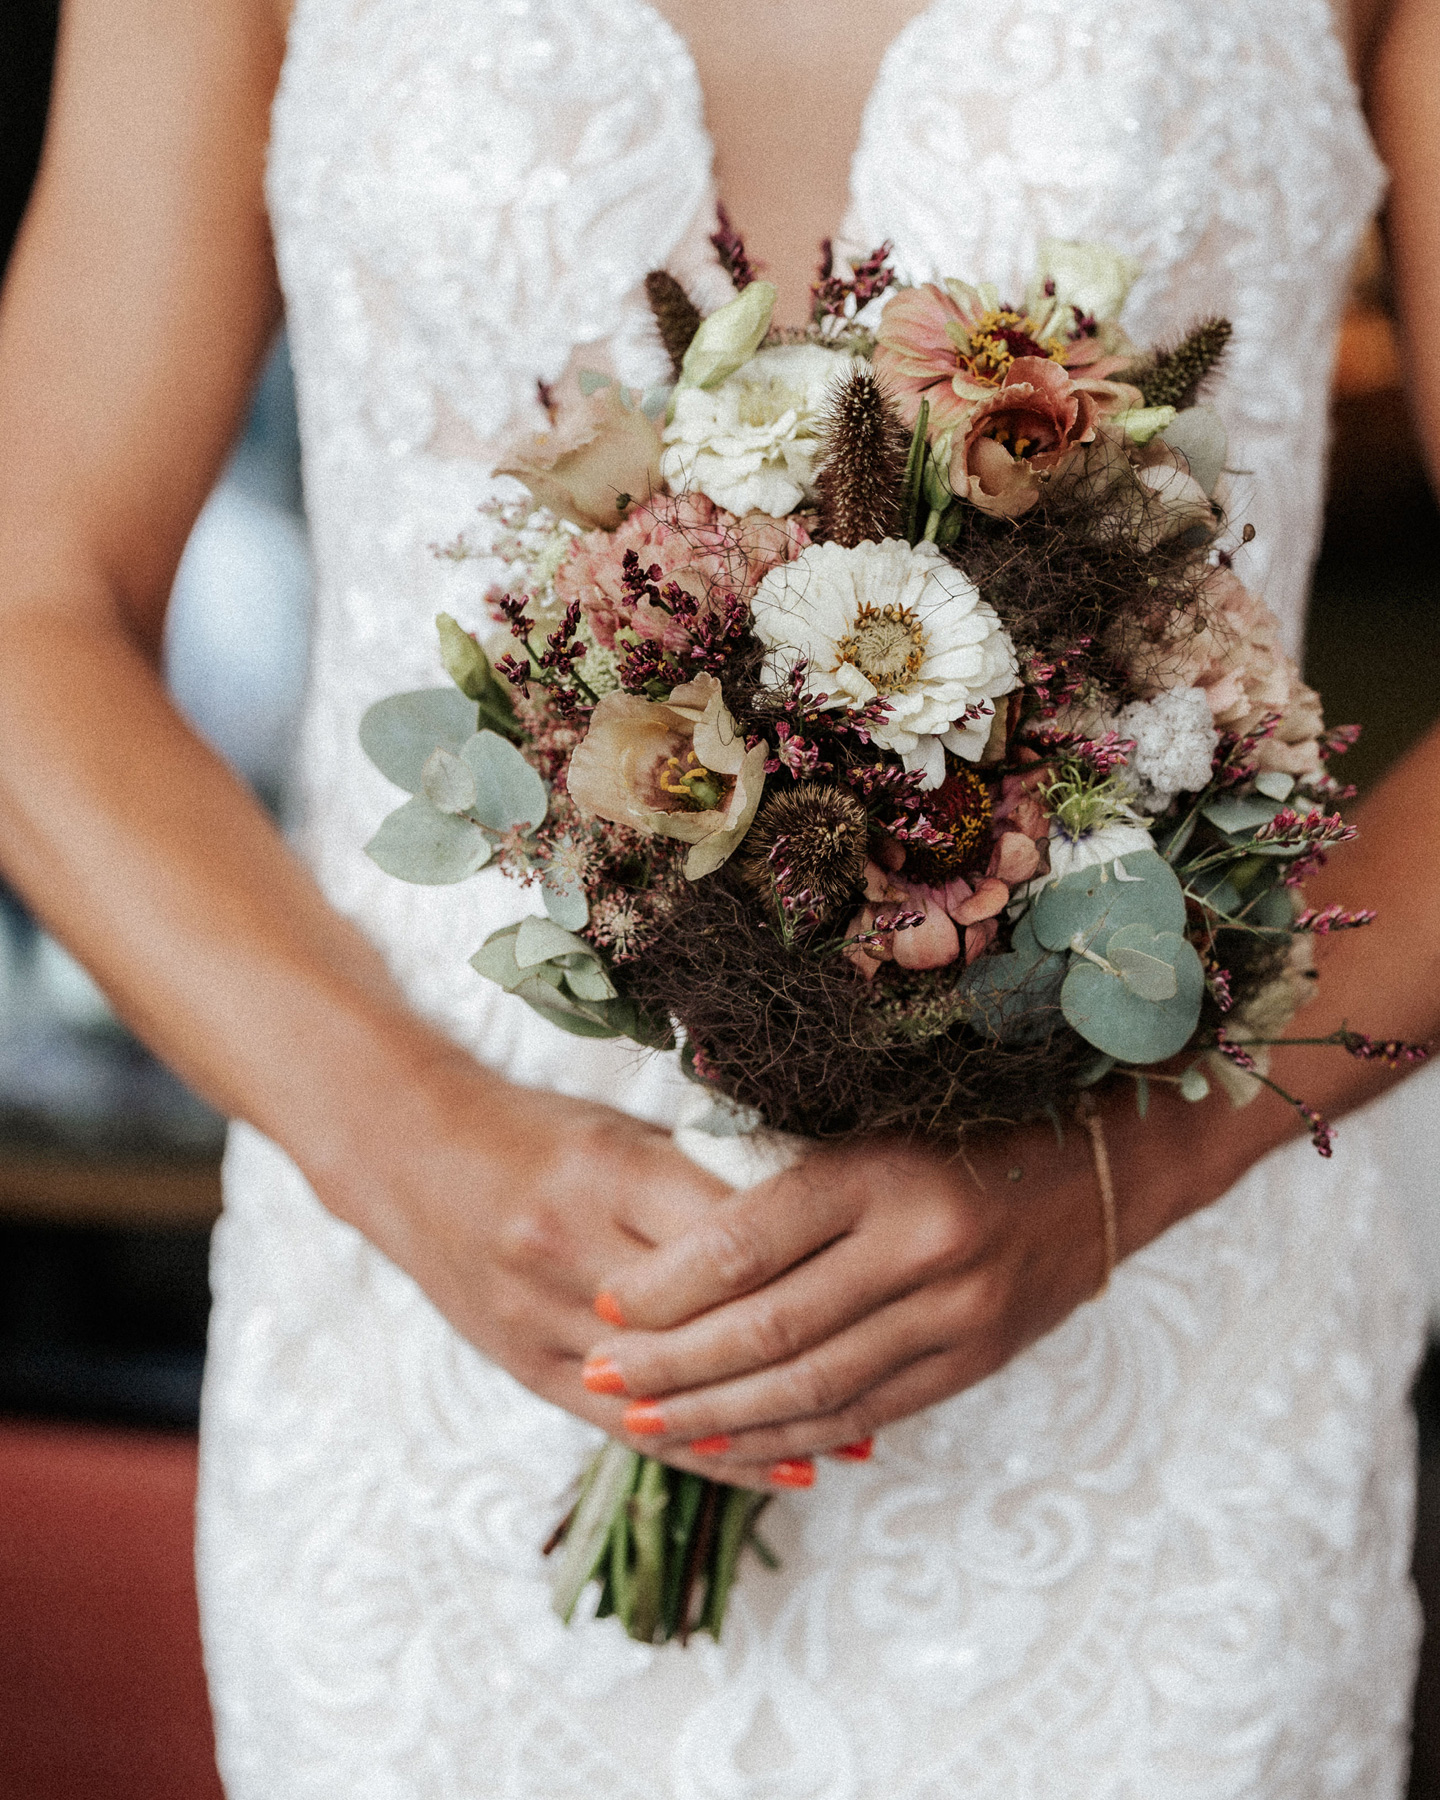 Bildausschnitt von Braut mit Brautstrauß in Rosétönen, Weiß und etwas Grün gebunden